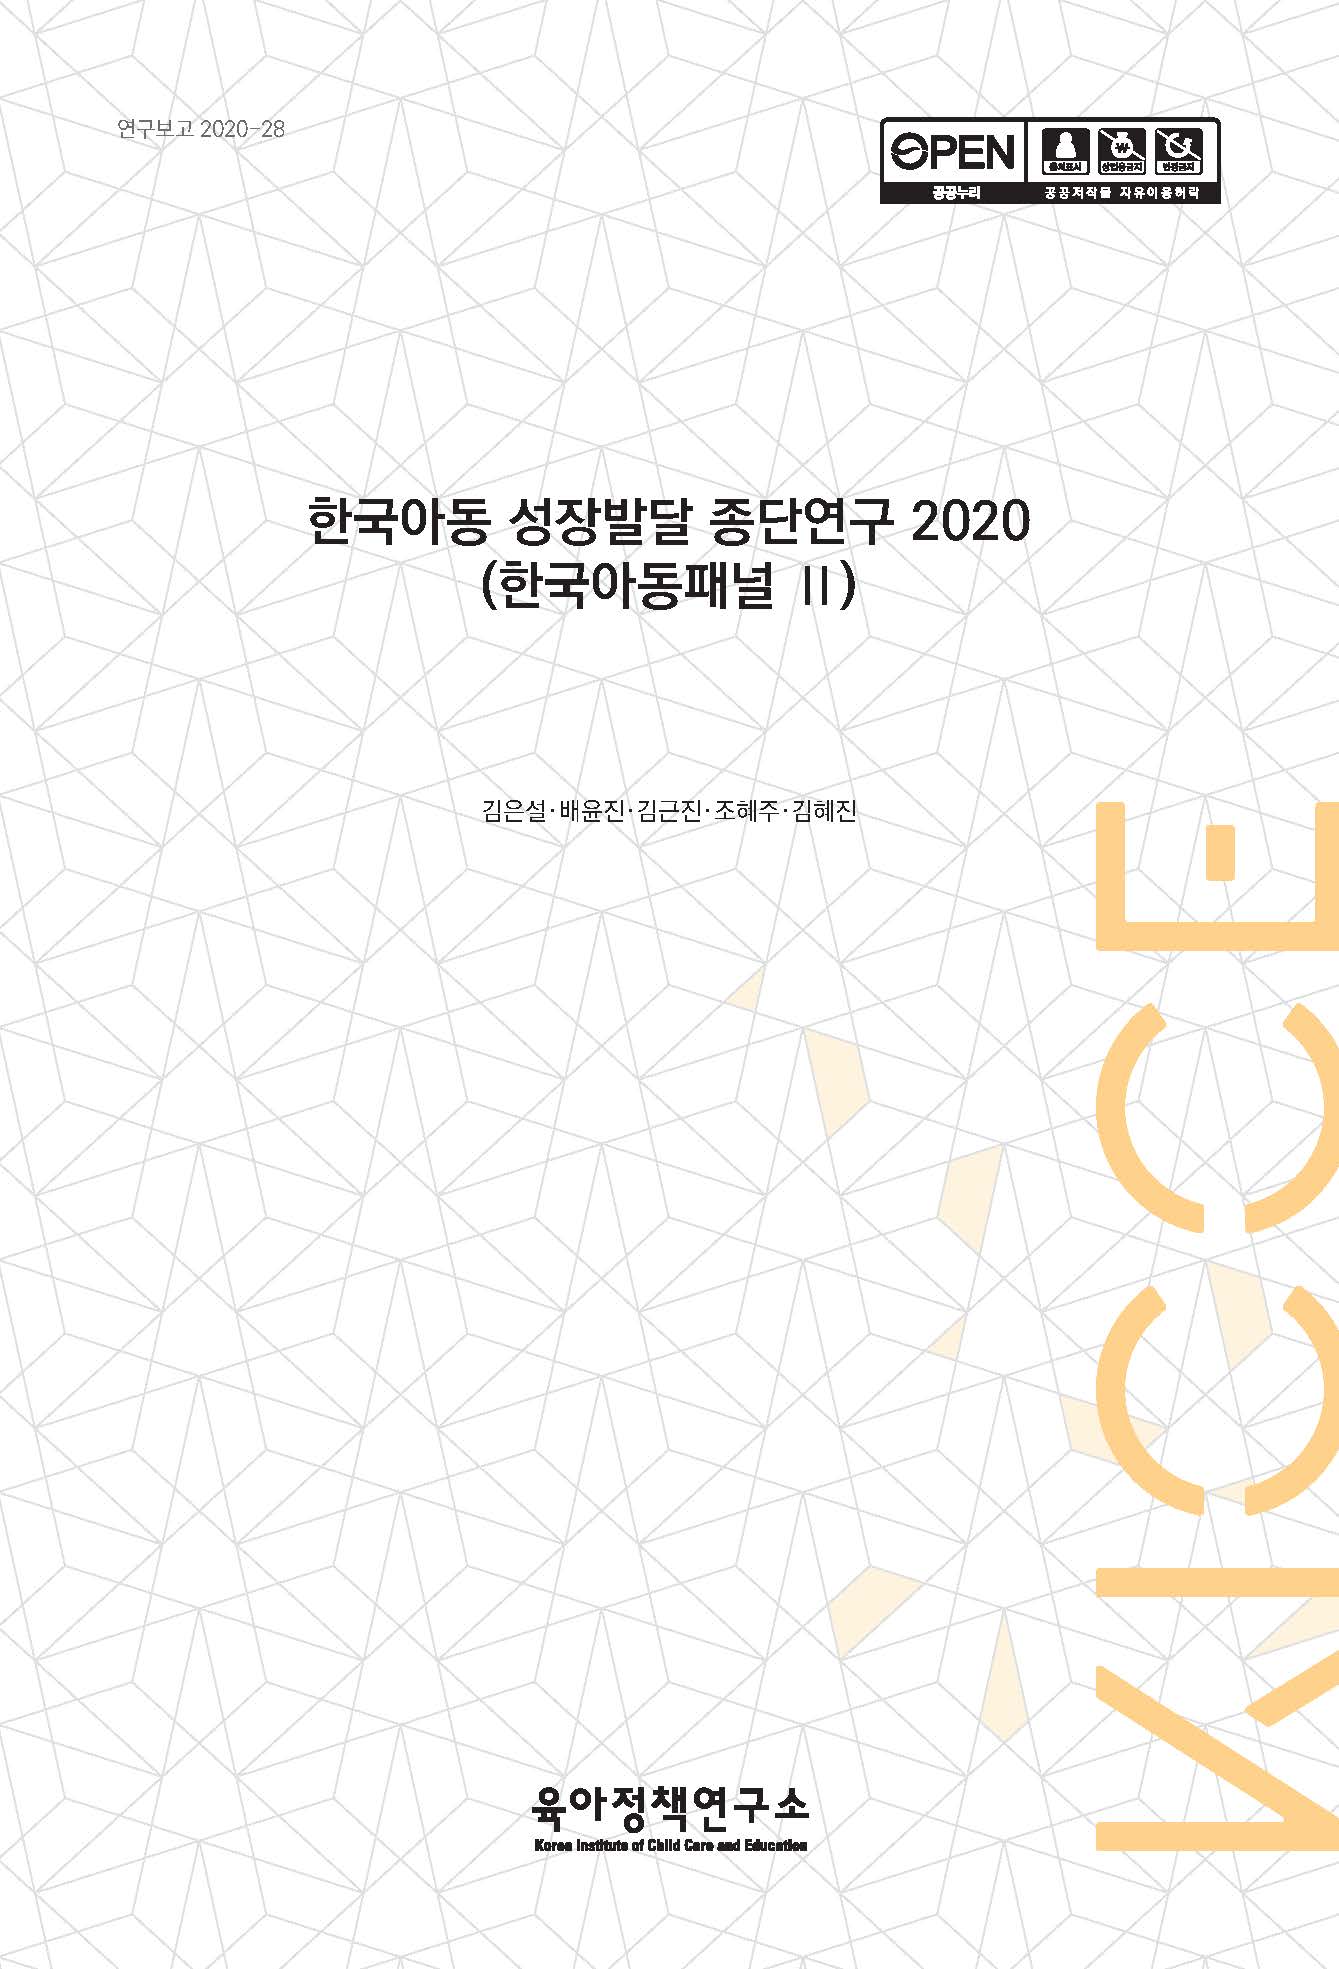 한국아동 성장발달 종단연구 2020(한국아동패널 Ⅱ) 관련 이미지 입니다.